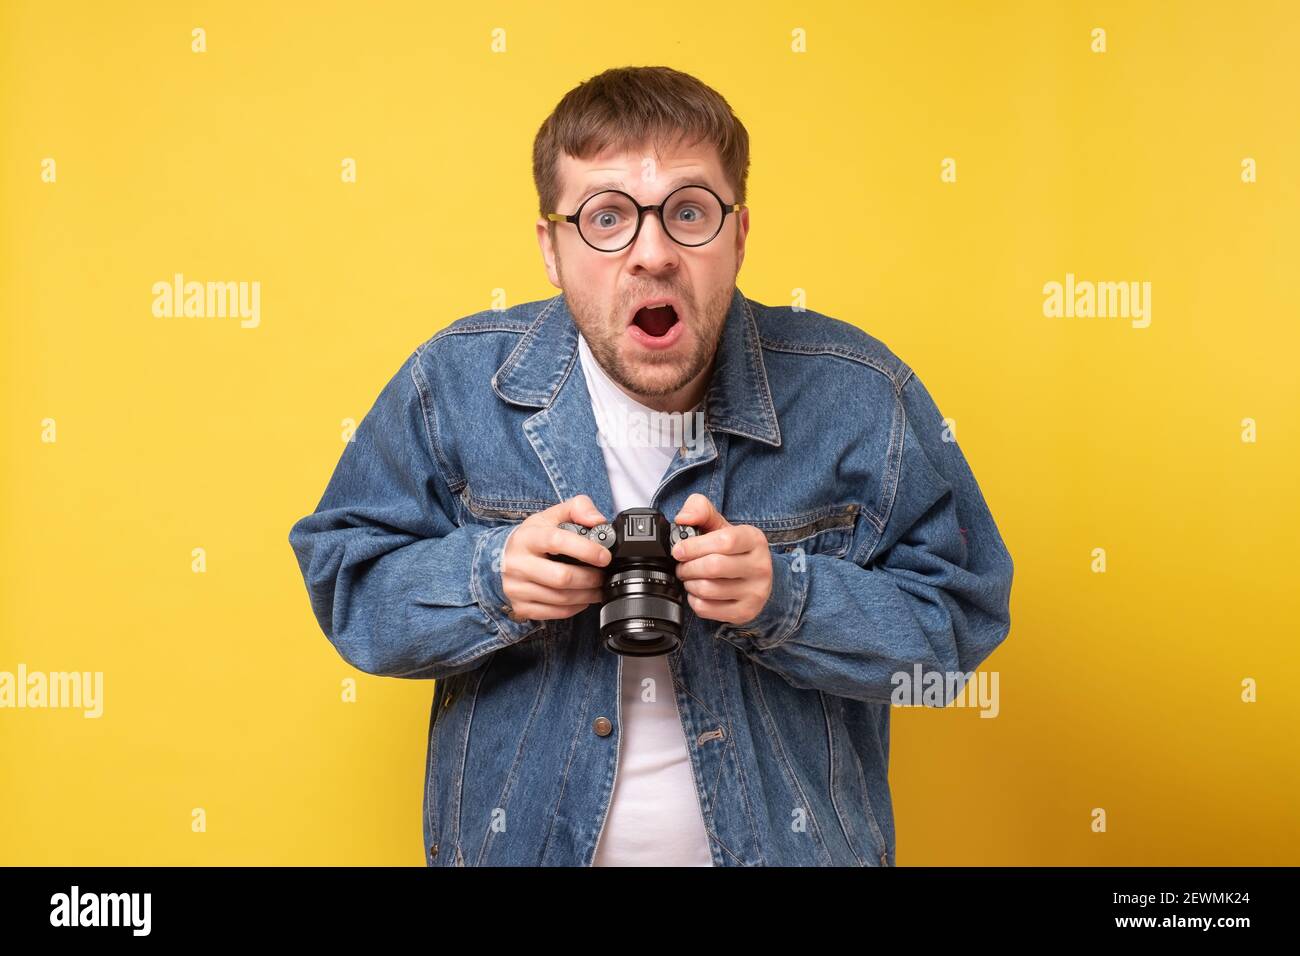 Studio-Porträt von goofy jungen Mann hält Fotokamera Aufnahme. Gelber Hintergrund. Stockfoto